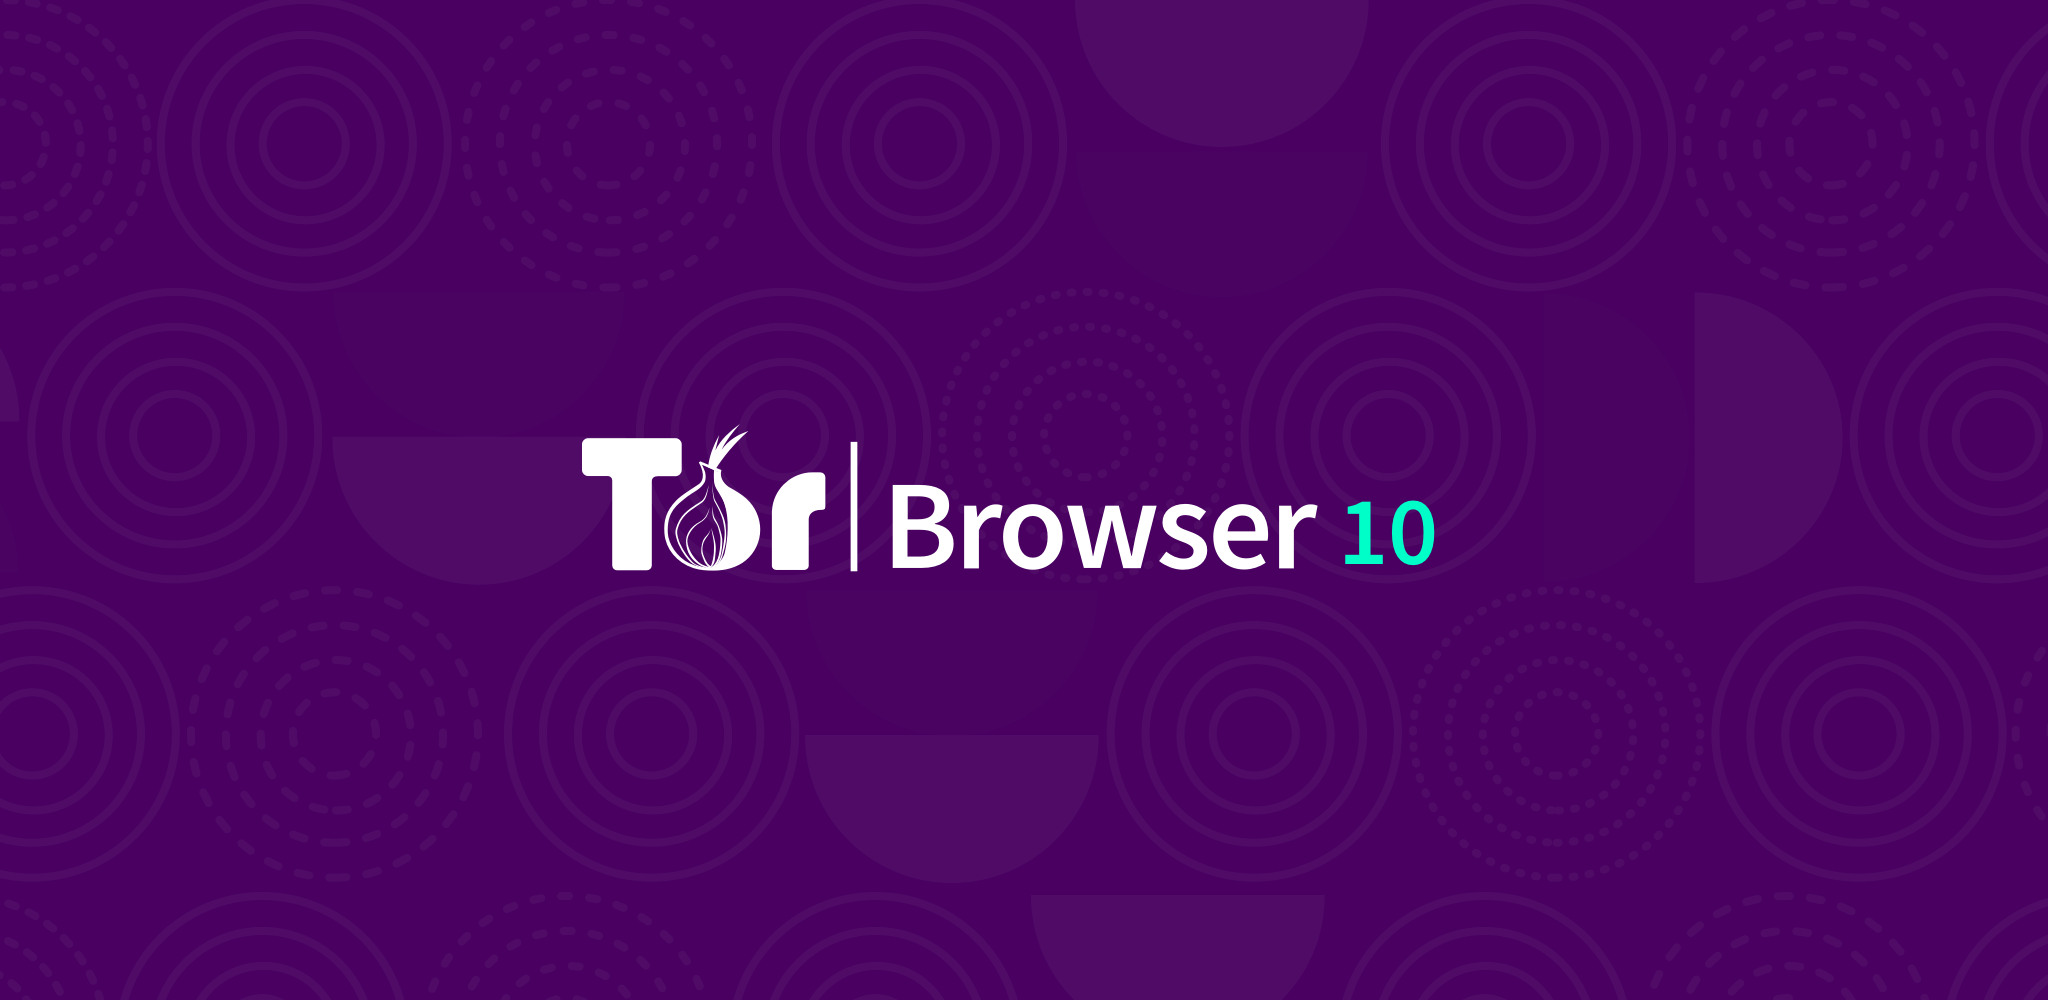 Tor browser официальная mega сеть внутри сети даркнет mega